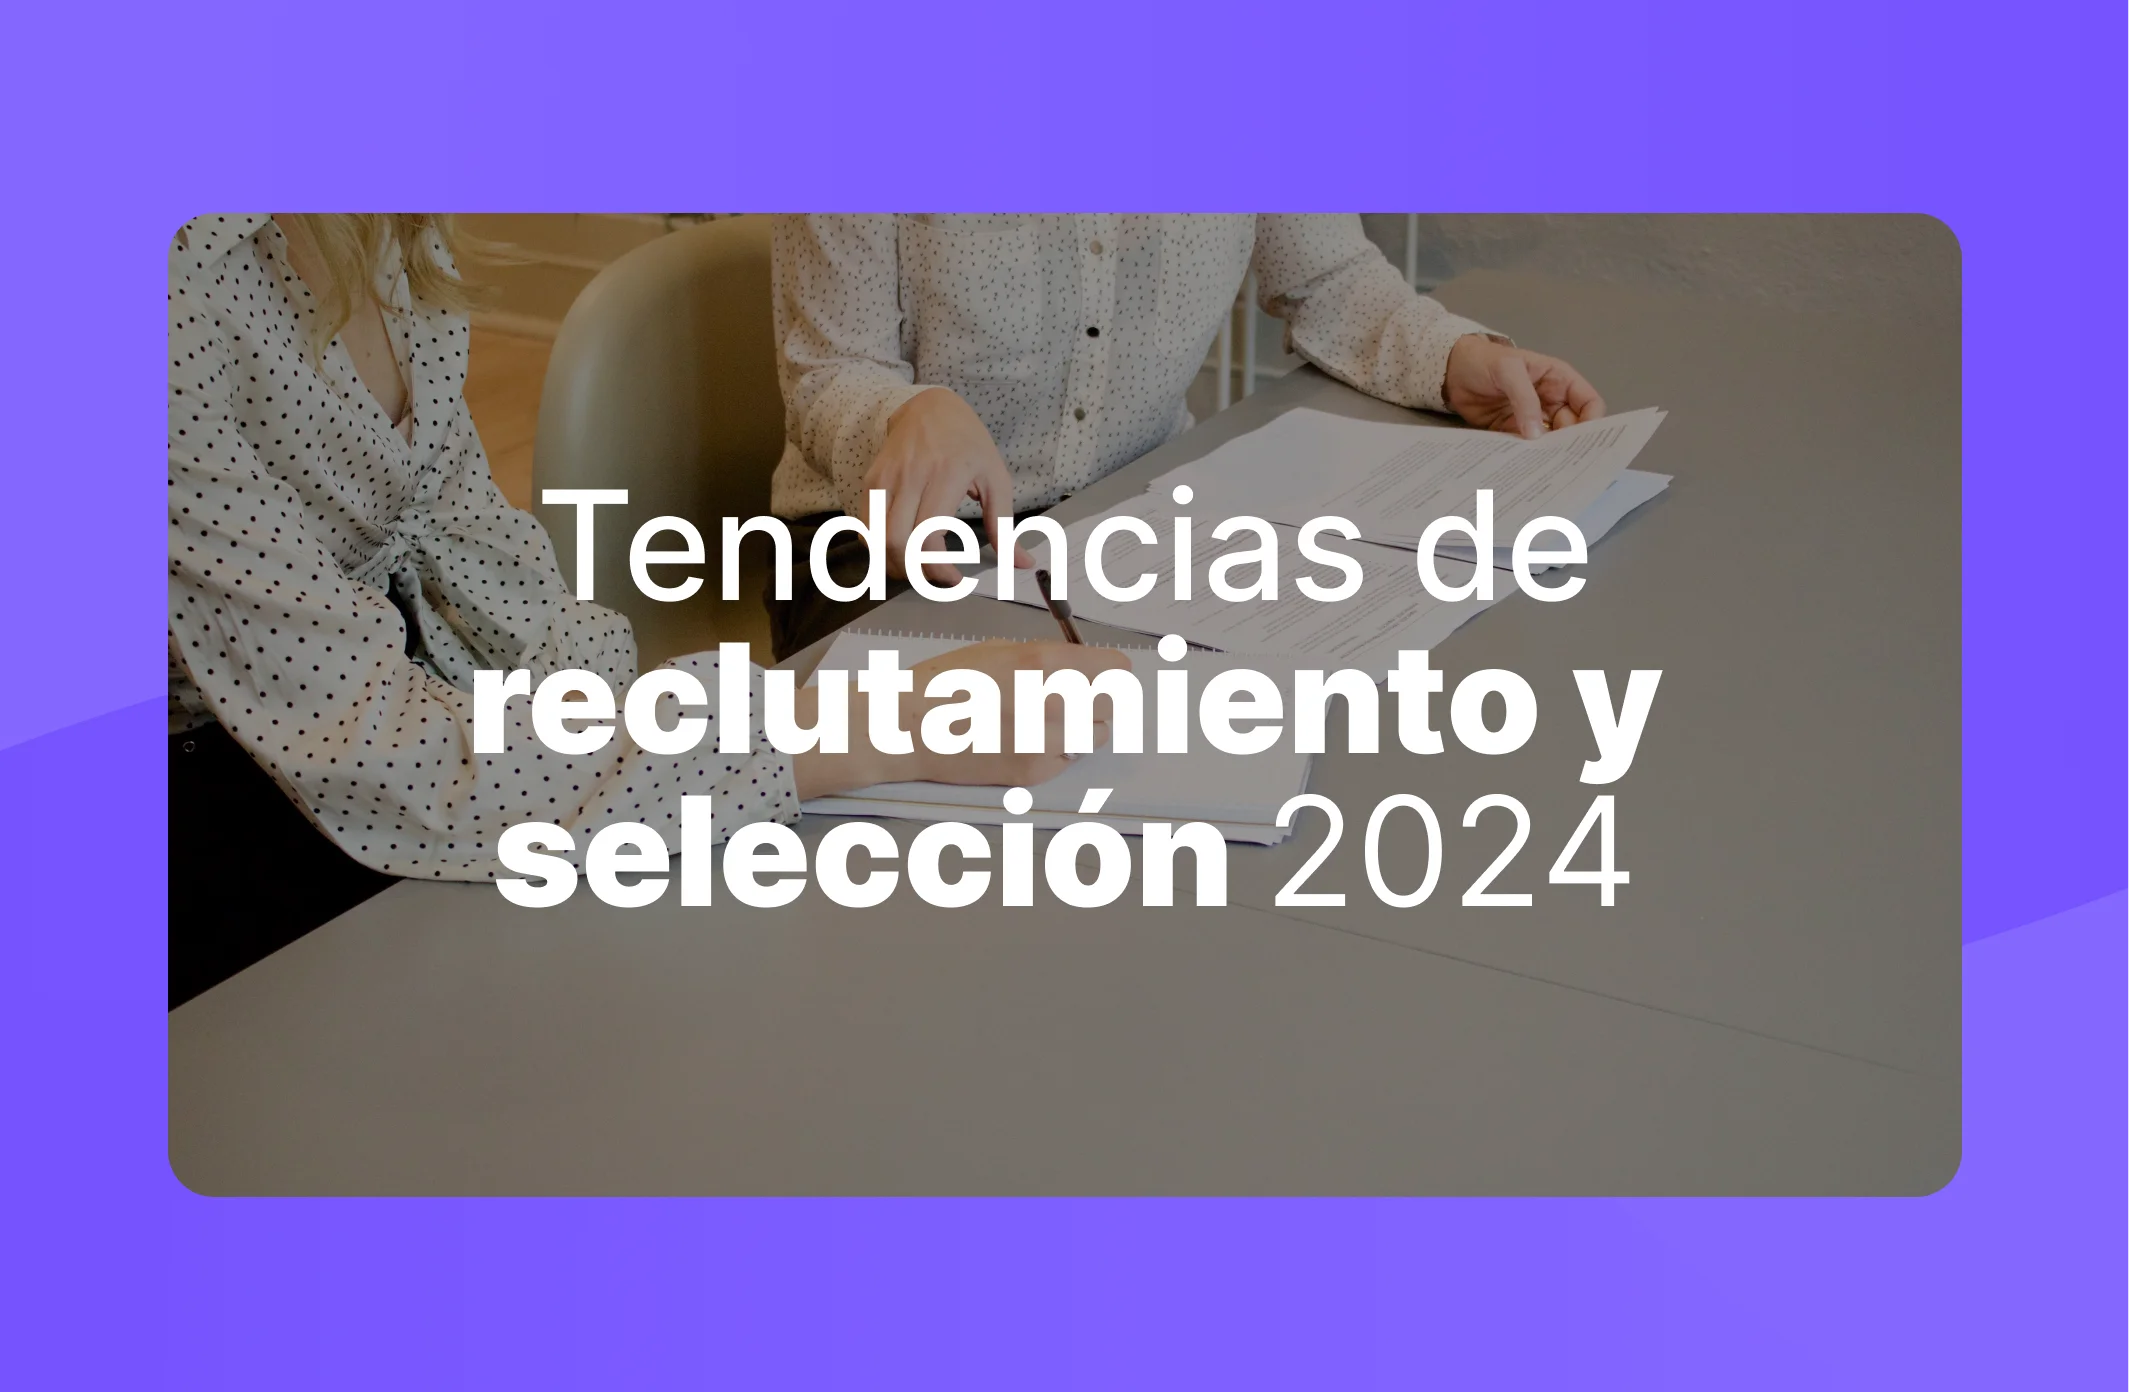 Tendencias de reclutamiento y selección en el 2024